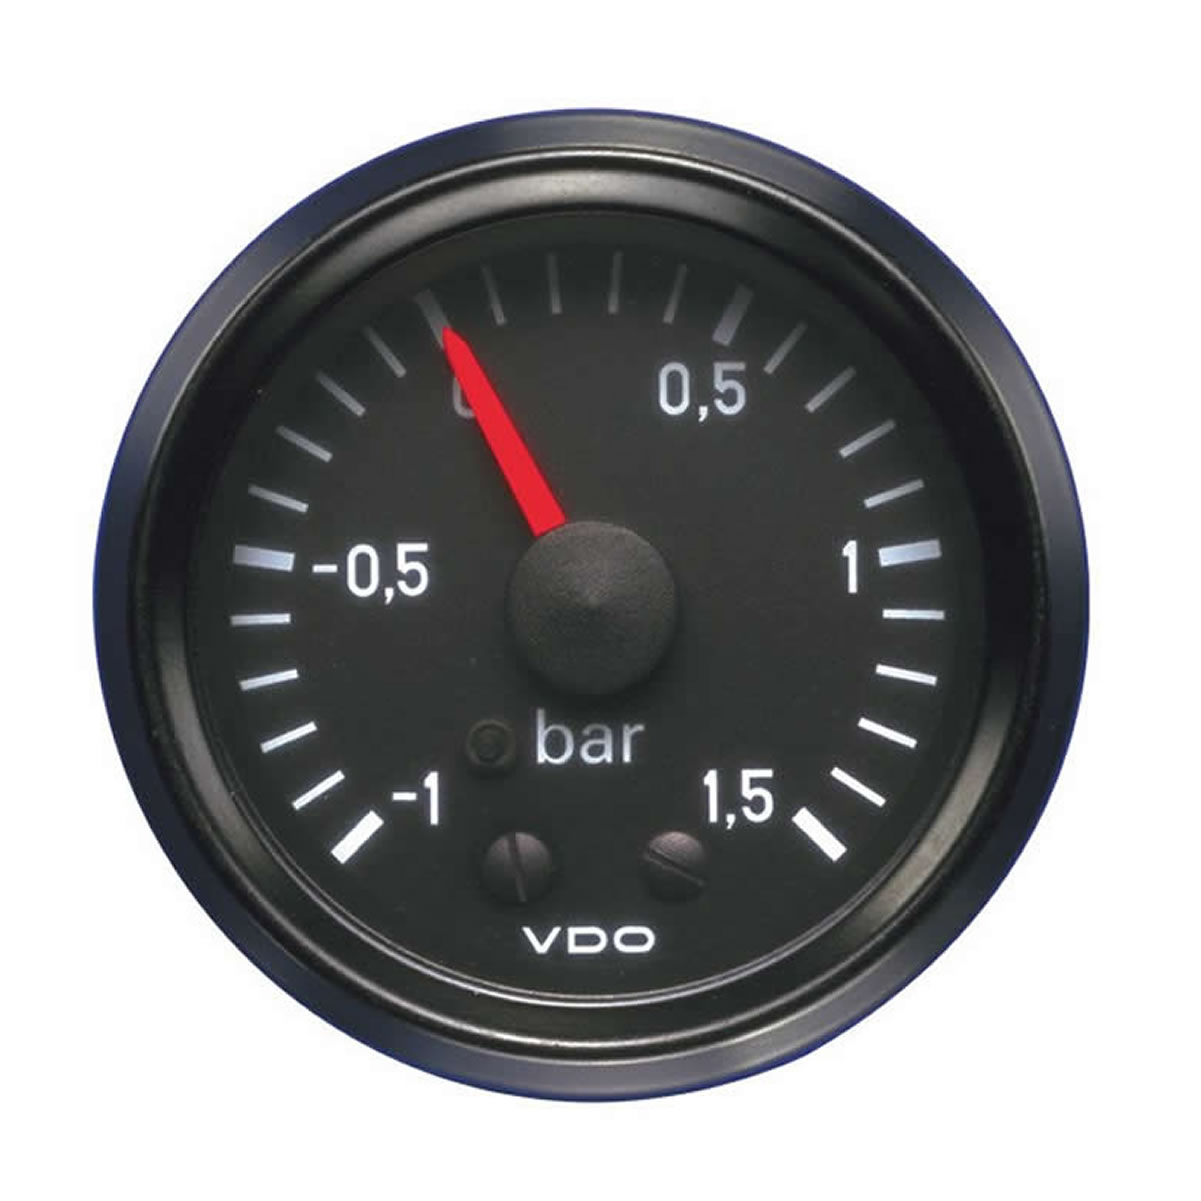 VDO Mechanical Turbo Charge Pressure Gauges -1 tot 1-5Bar 52mm